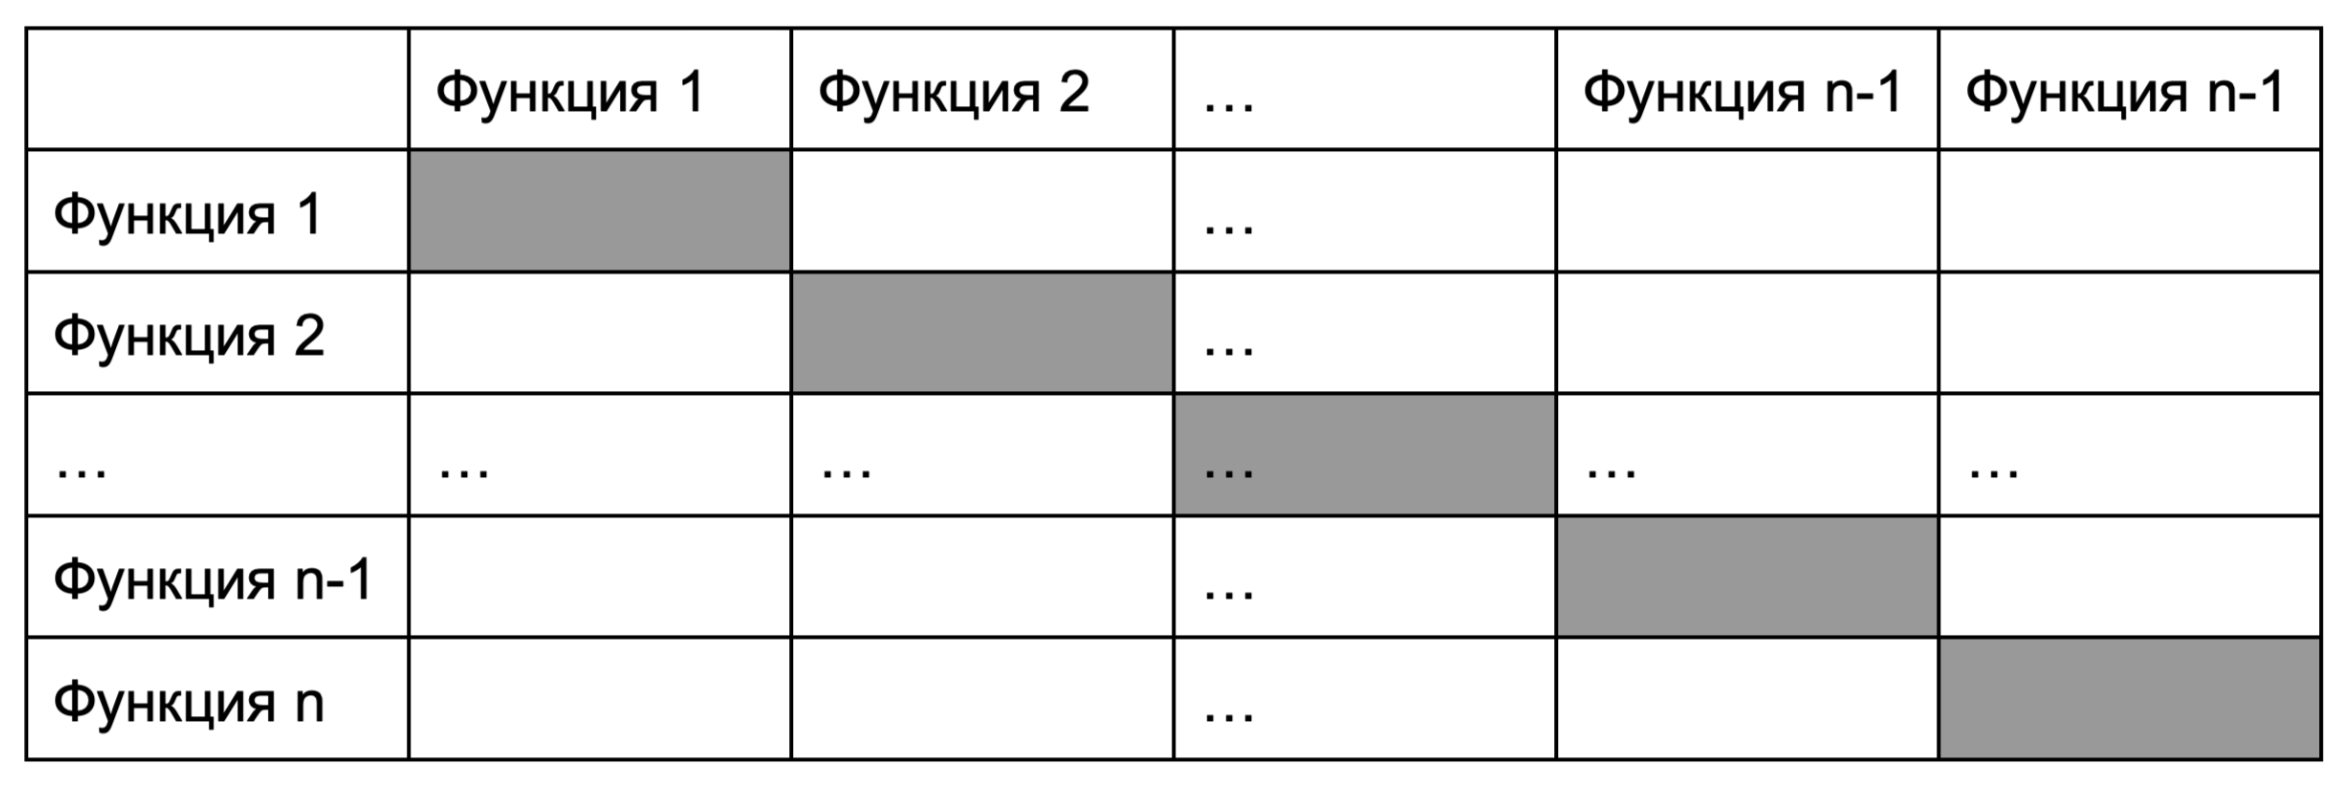 Шаблон таблицы для выявления функций